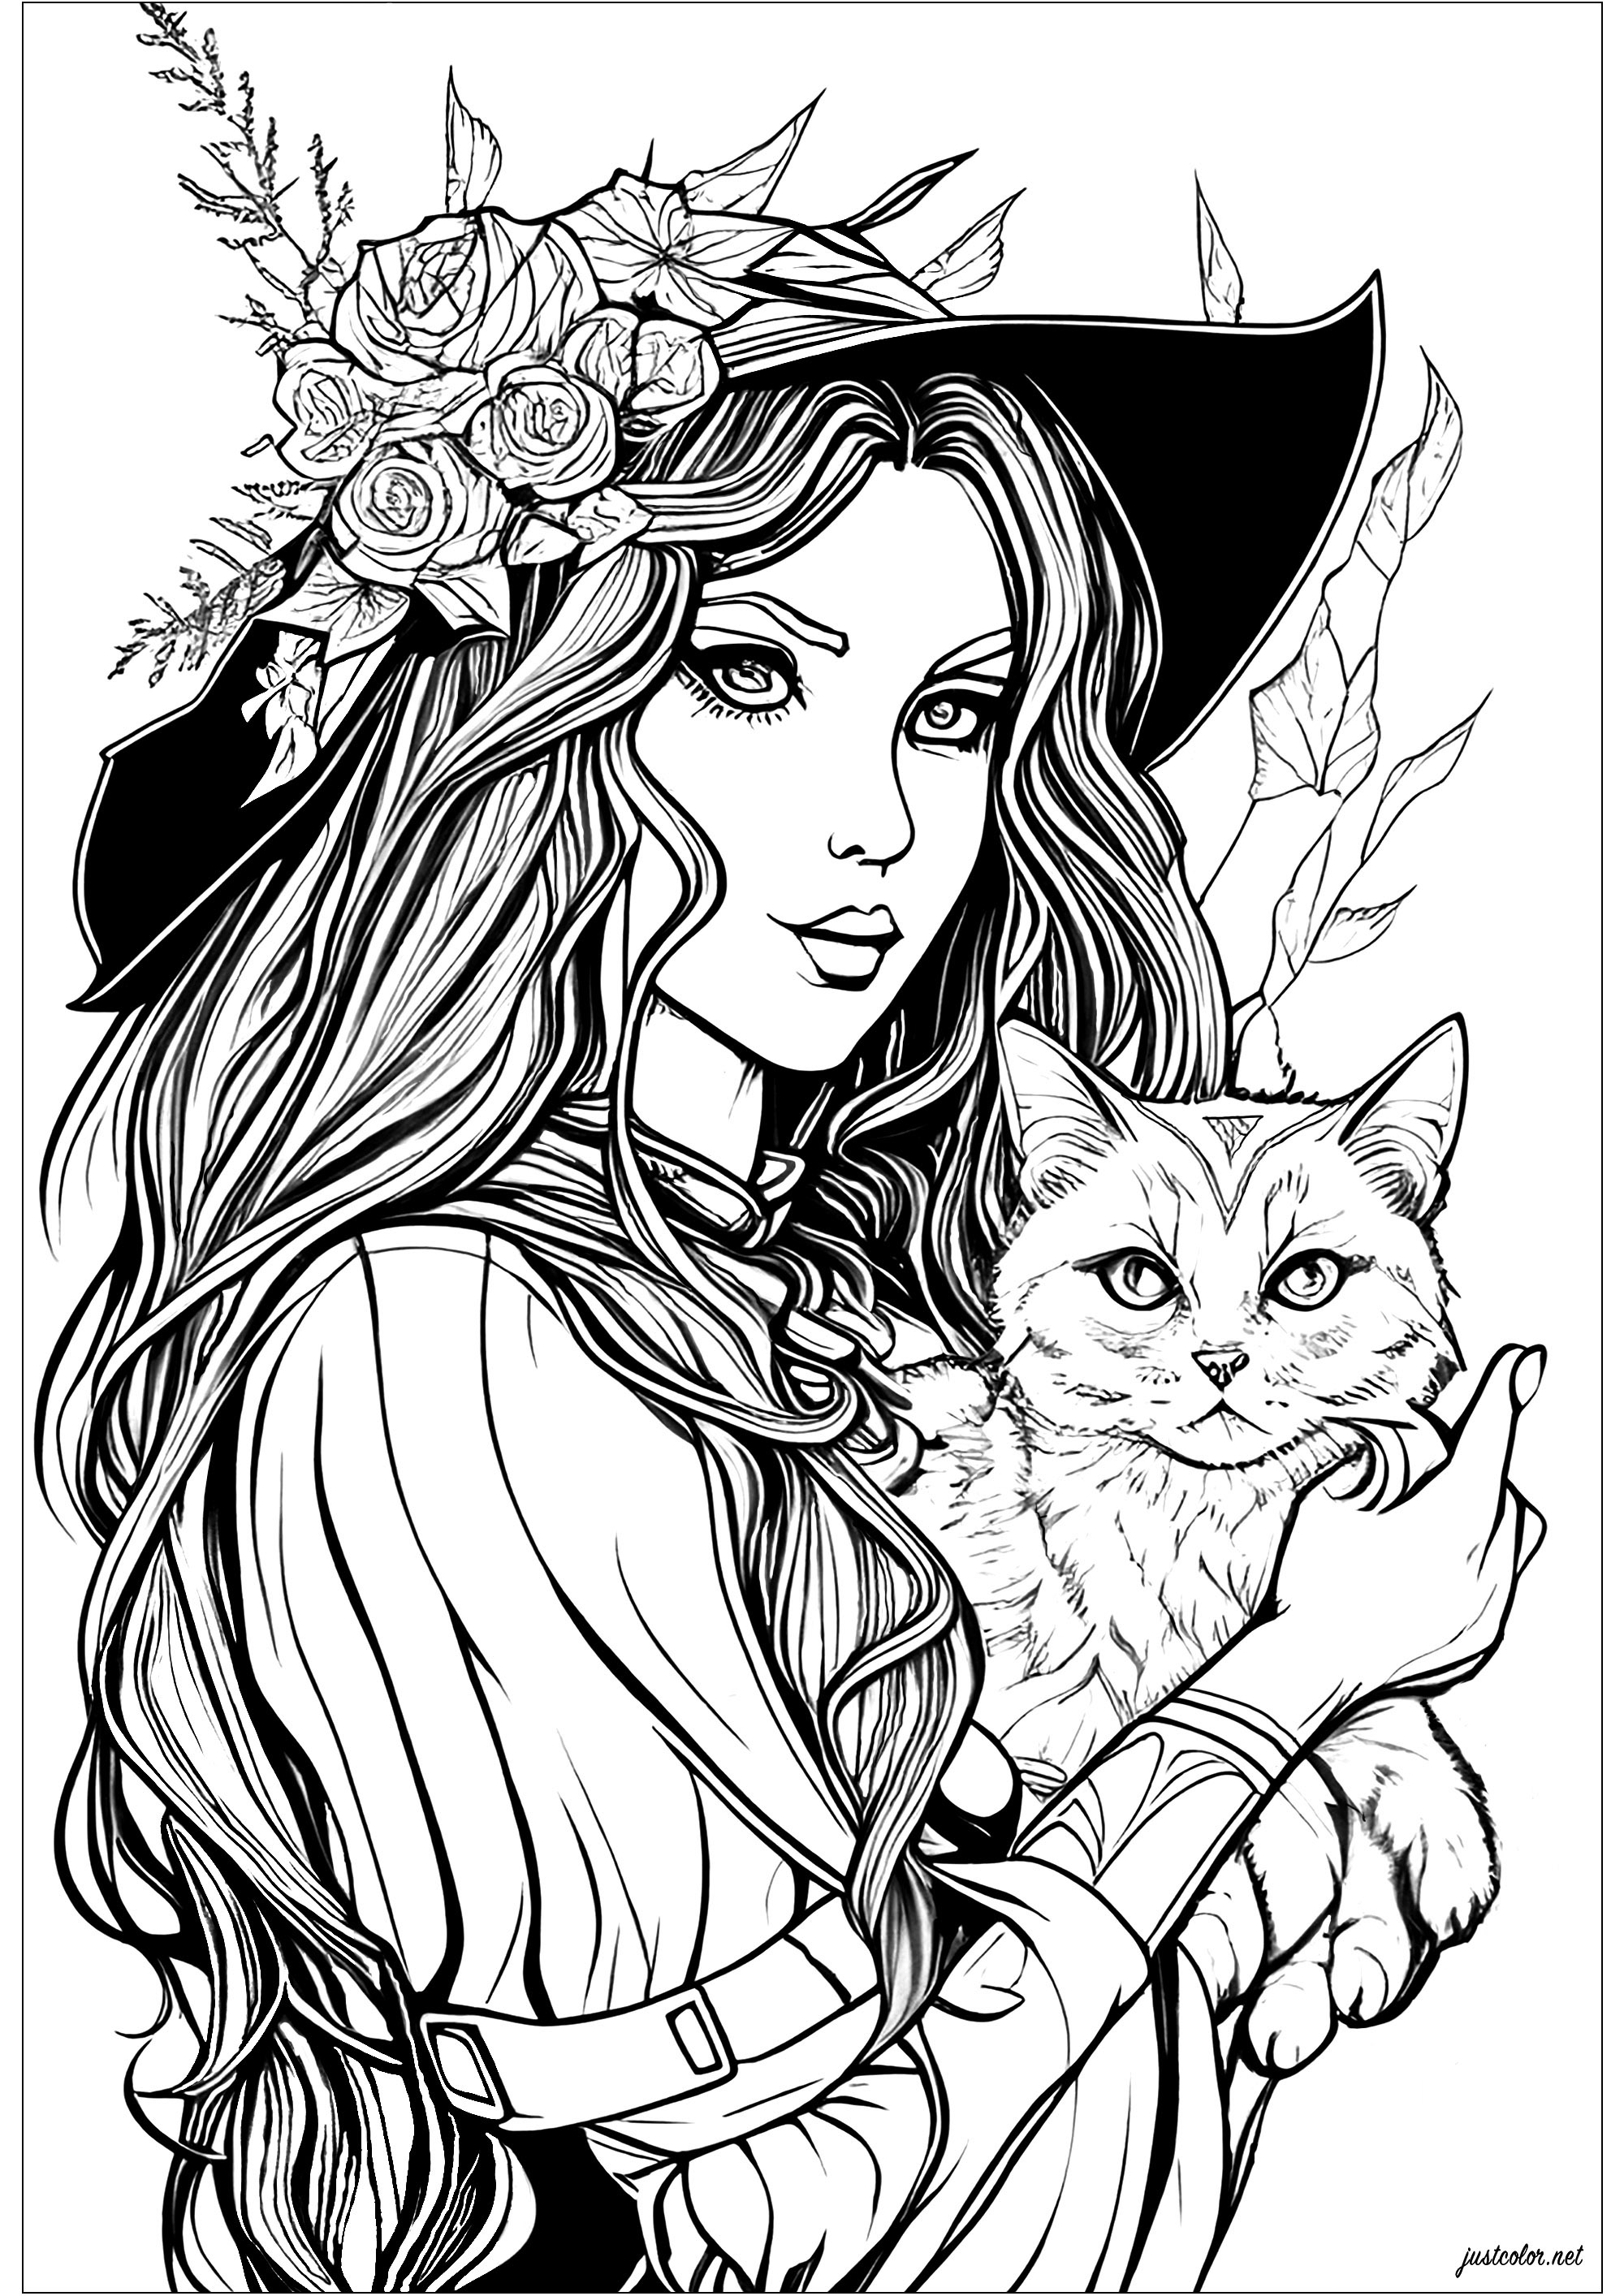 Coloriage d'une sorcière au regard ensorcelant, et son chat malicieux. Un coloriage maléfique, avec nombreux détails, et avec des sujets très réalistes.